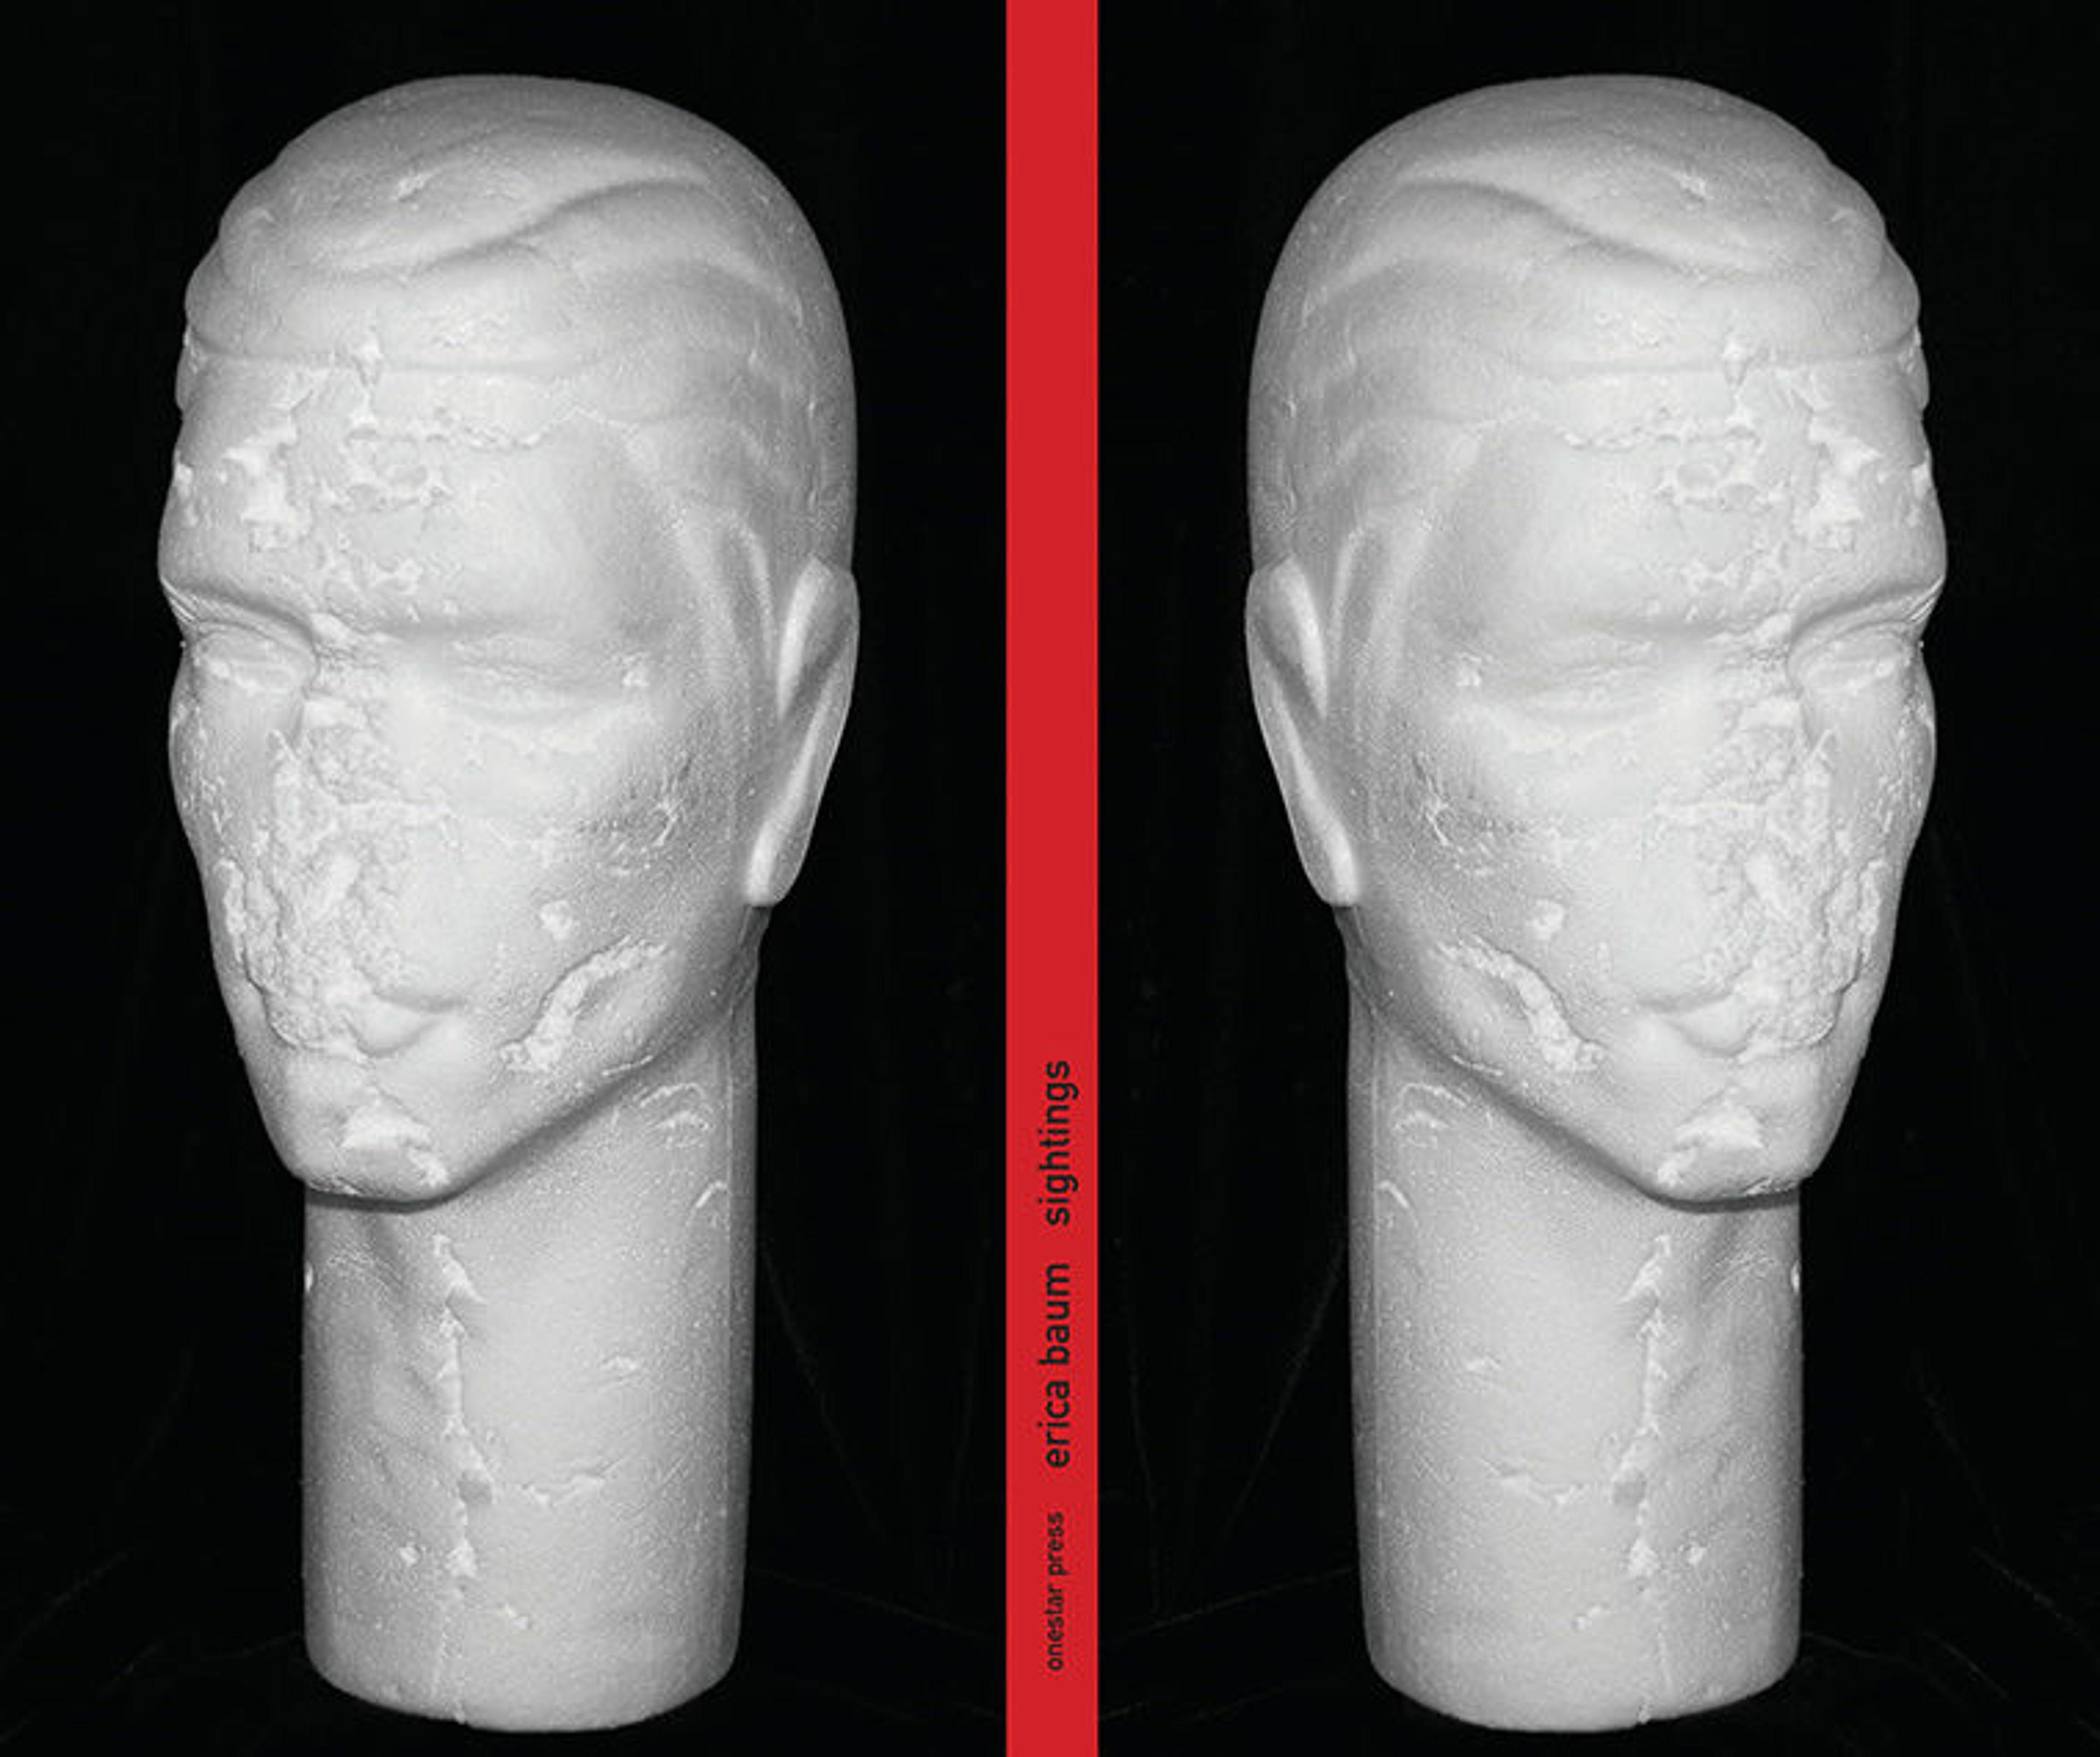 sculptural heads